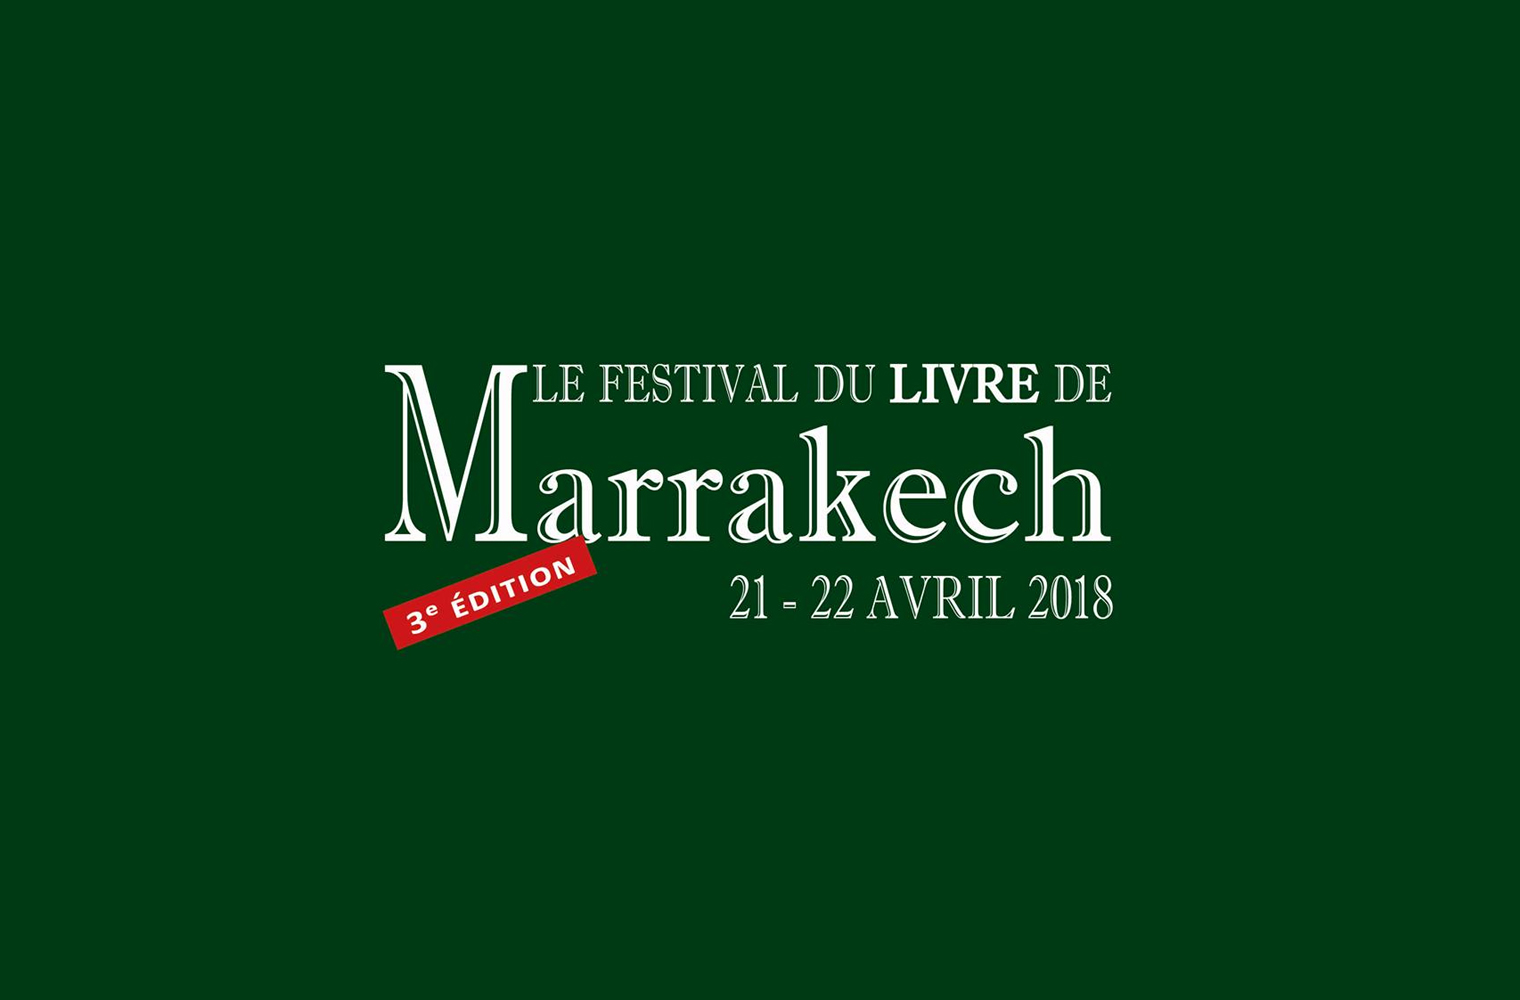 Le Festival du livre de retour à Marrakech